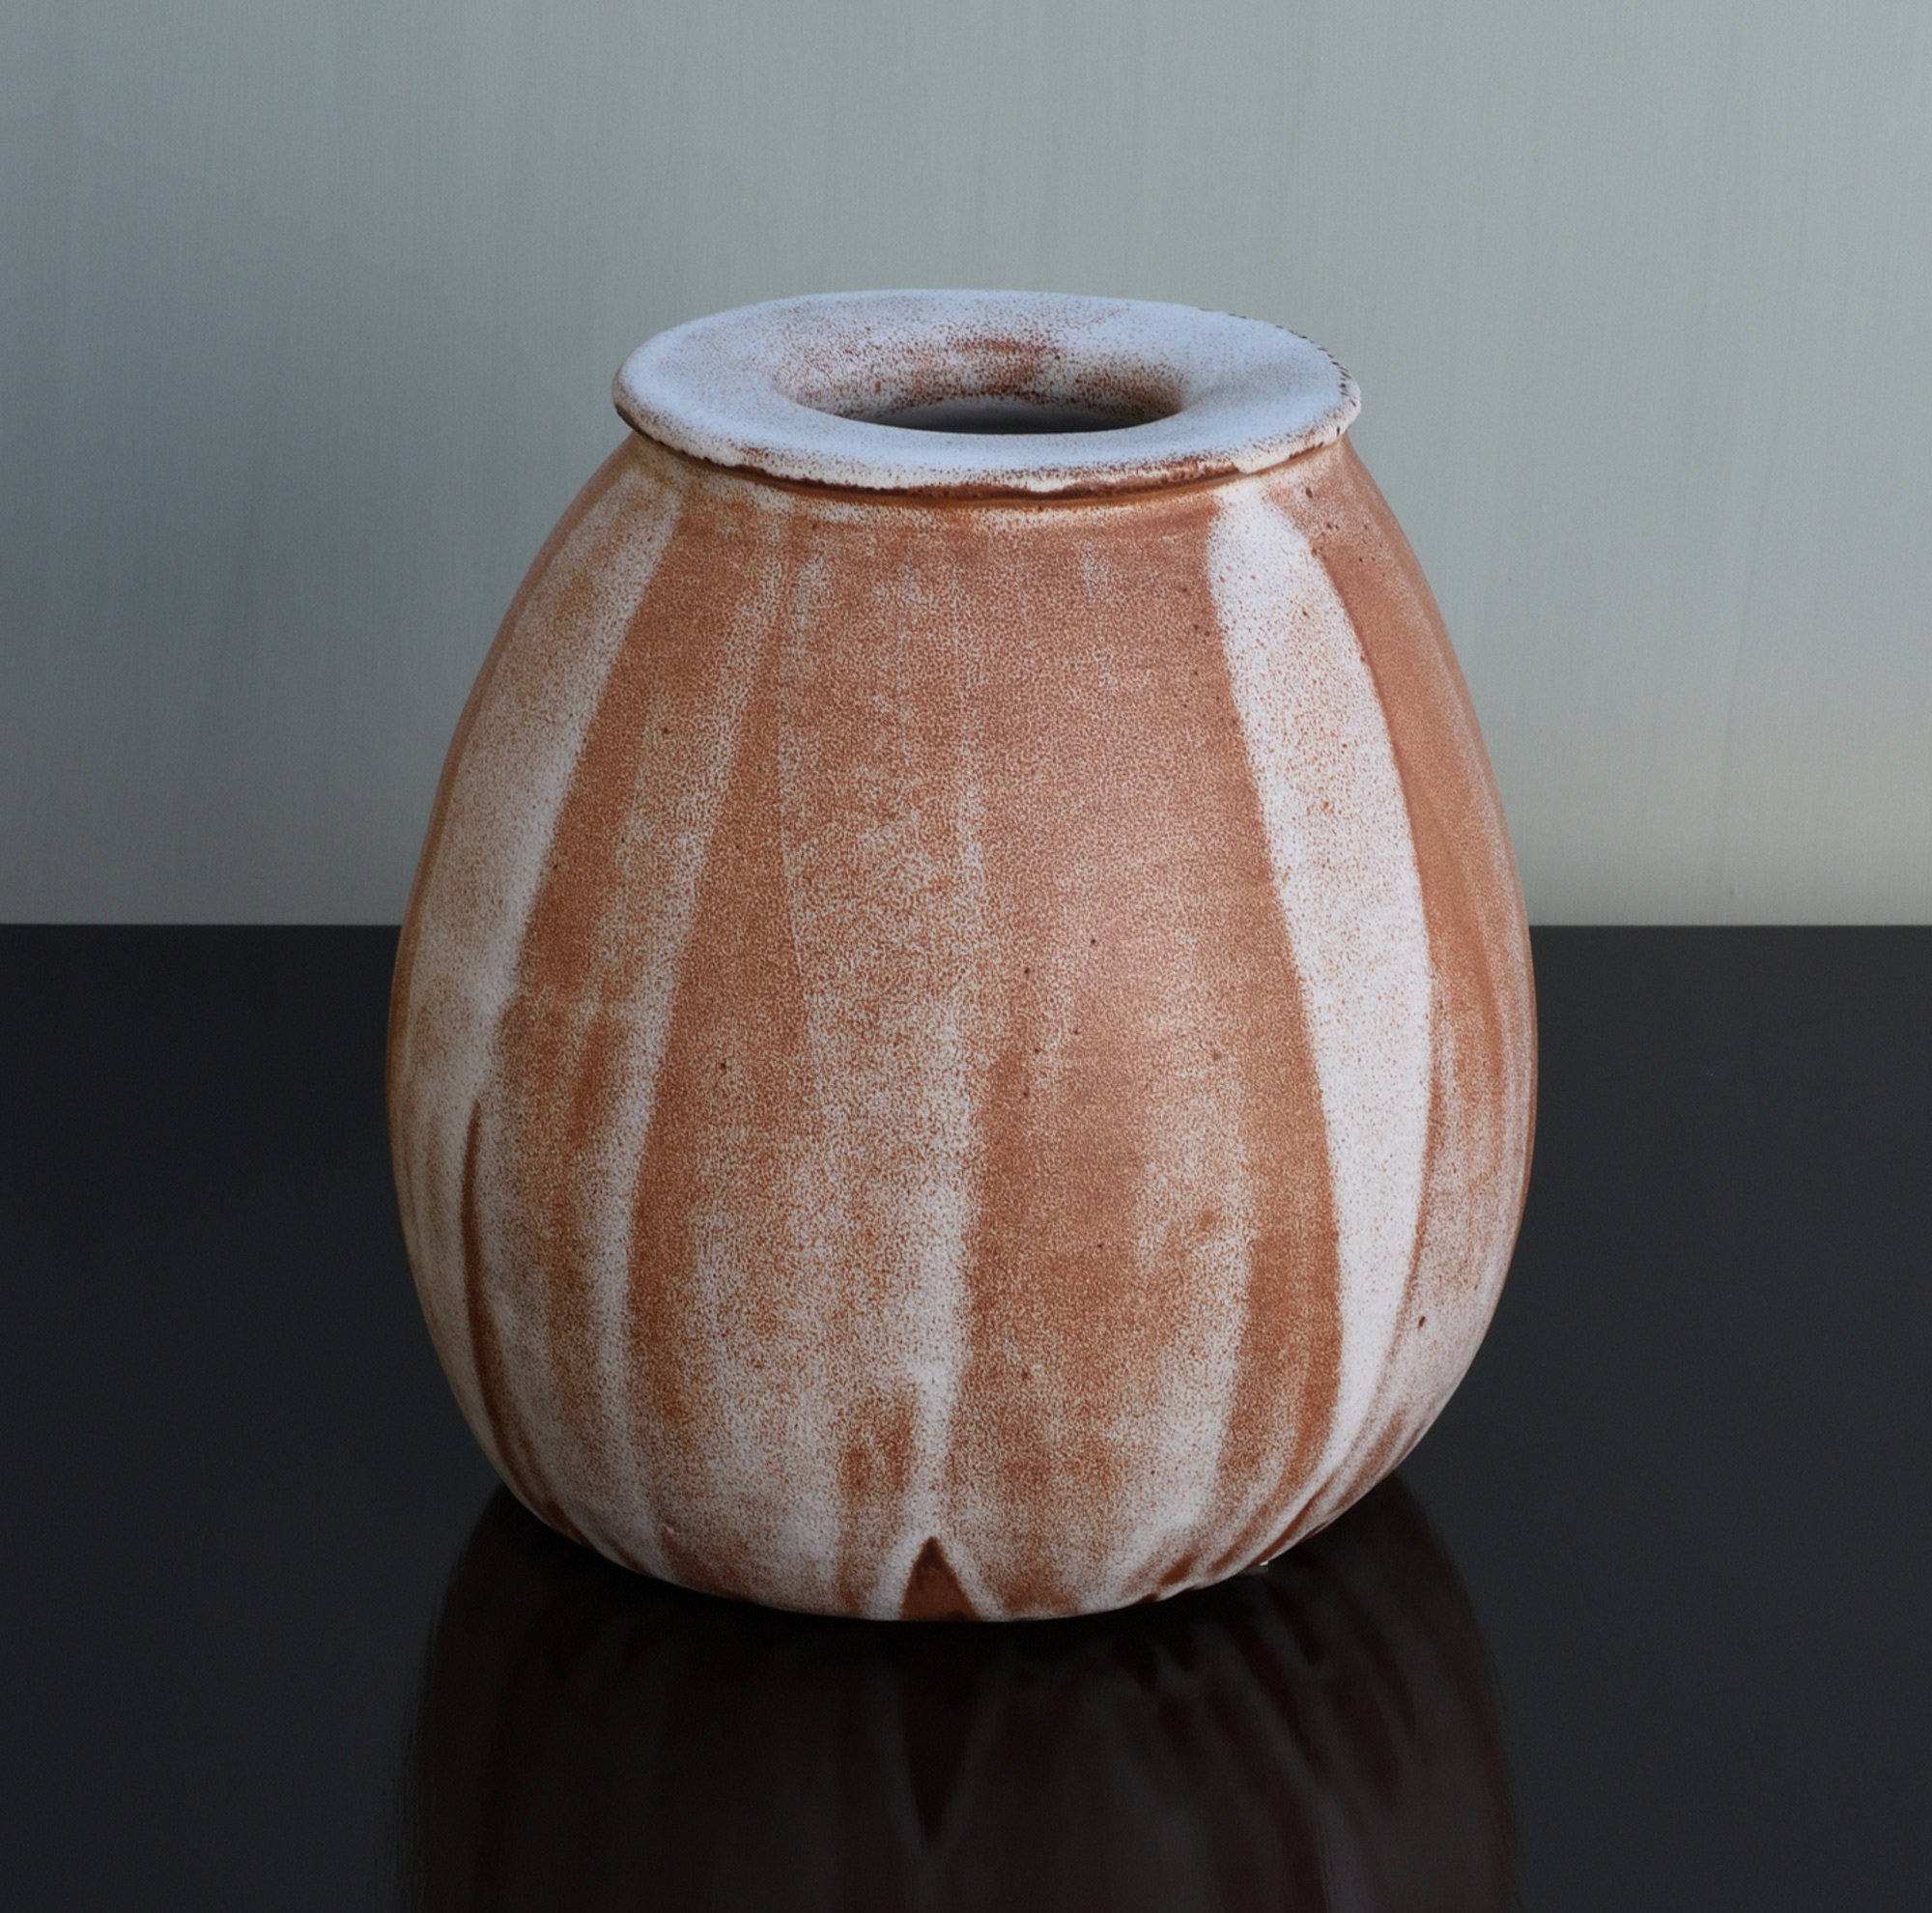 Glazed ceramic, 29 x 29 x 29 cm